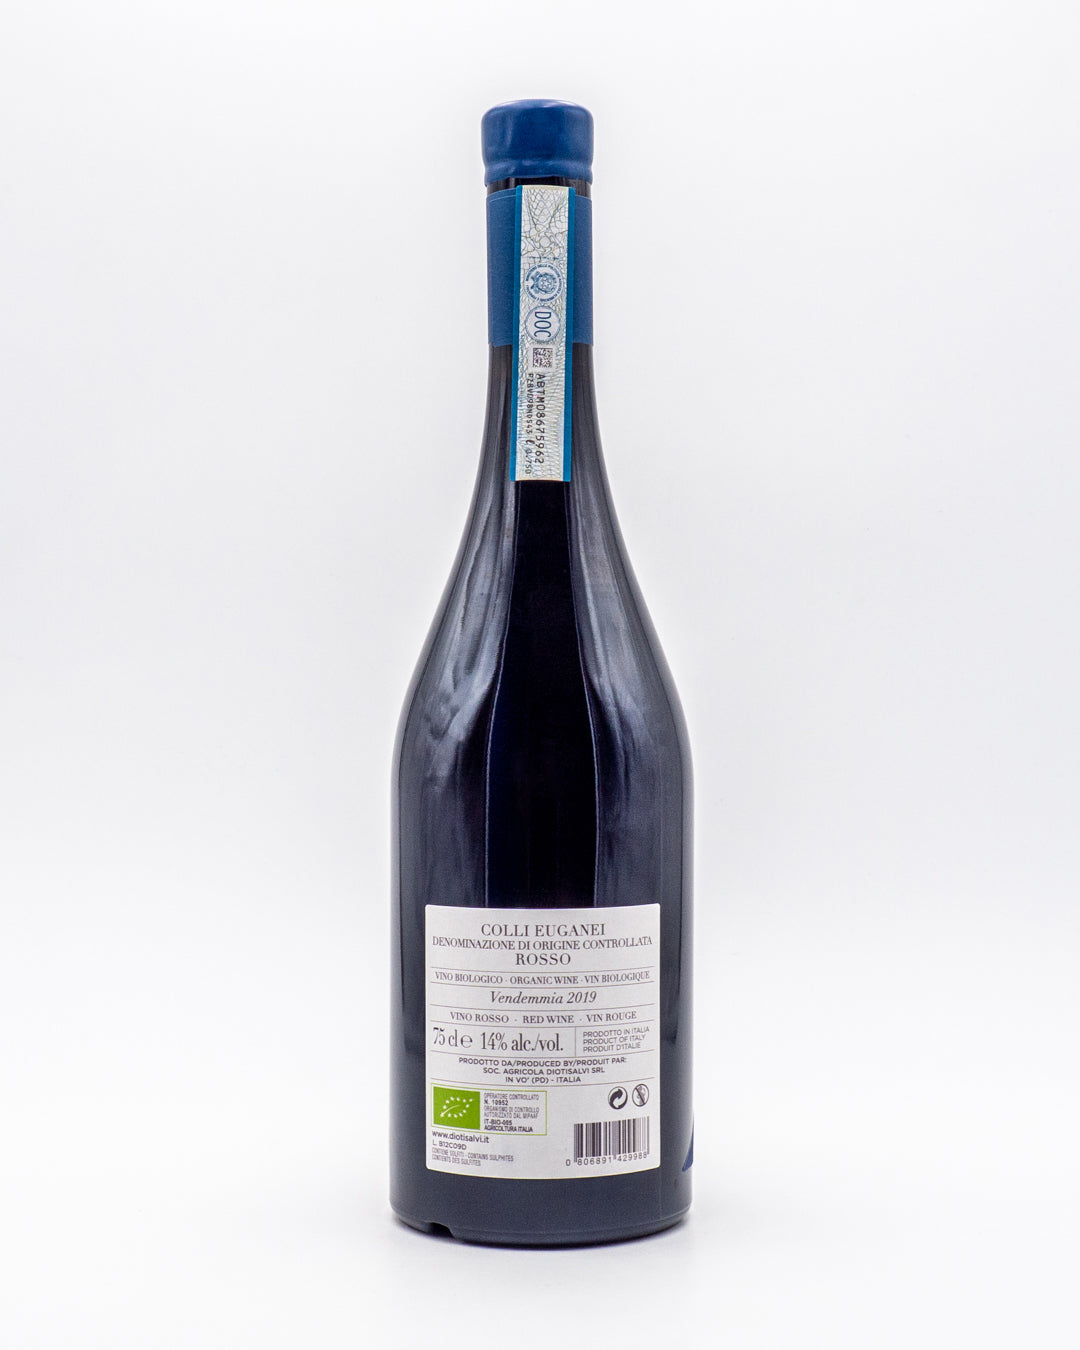 blunotte-merlot-cabernet-franc-bio-diotisalvi-14-75cl